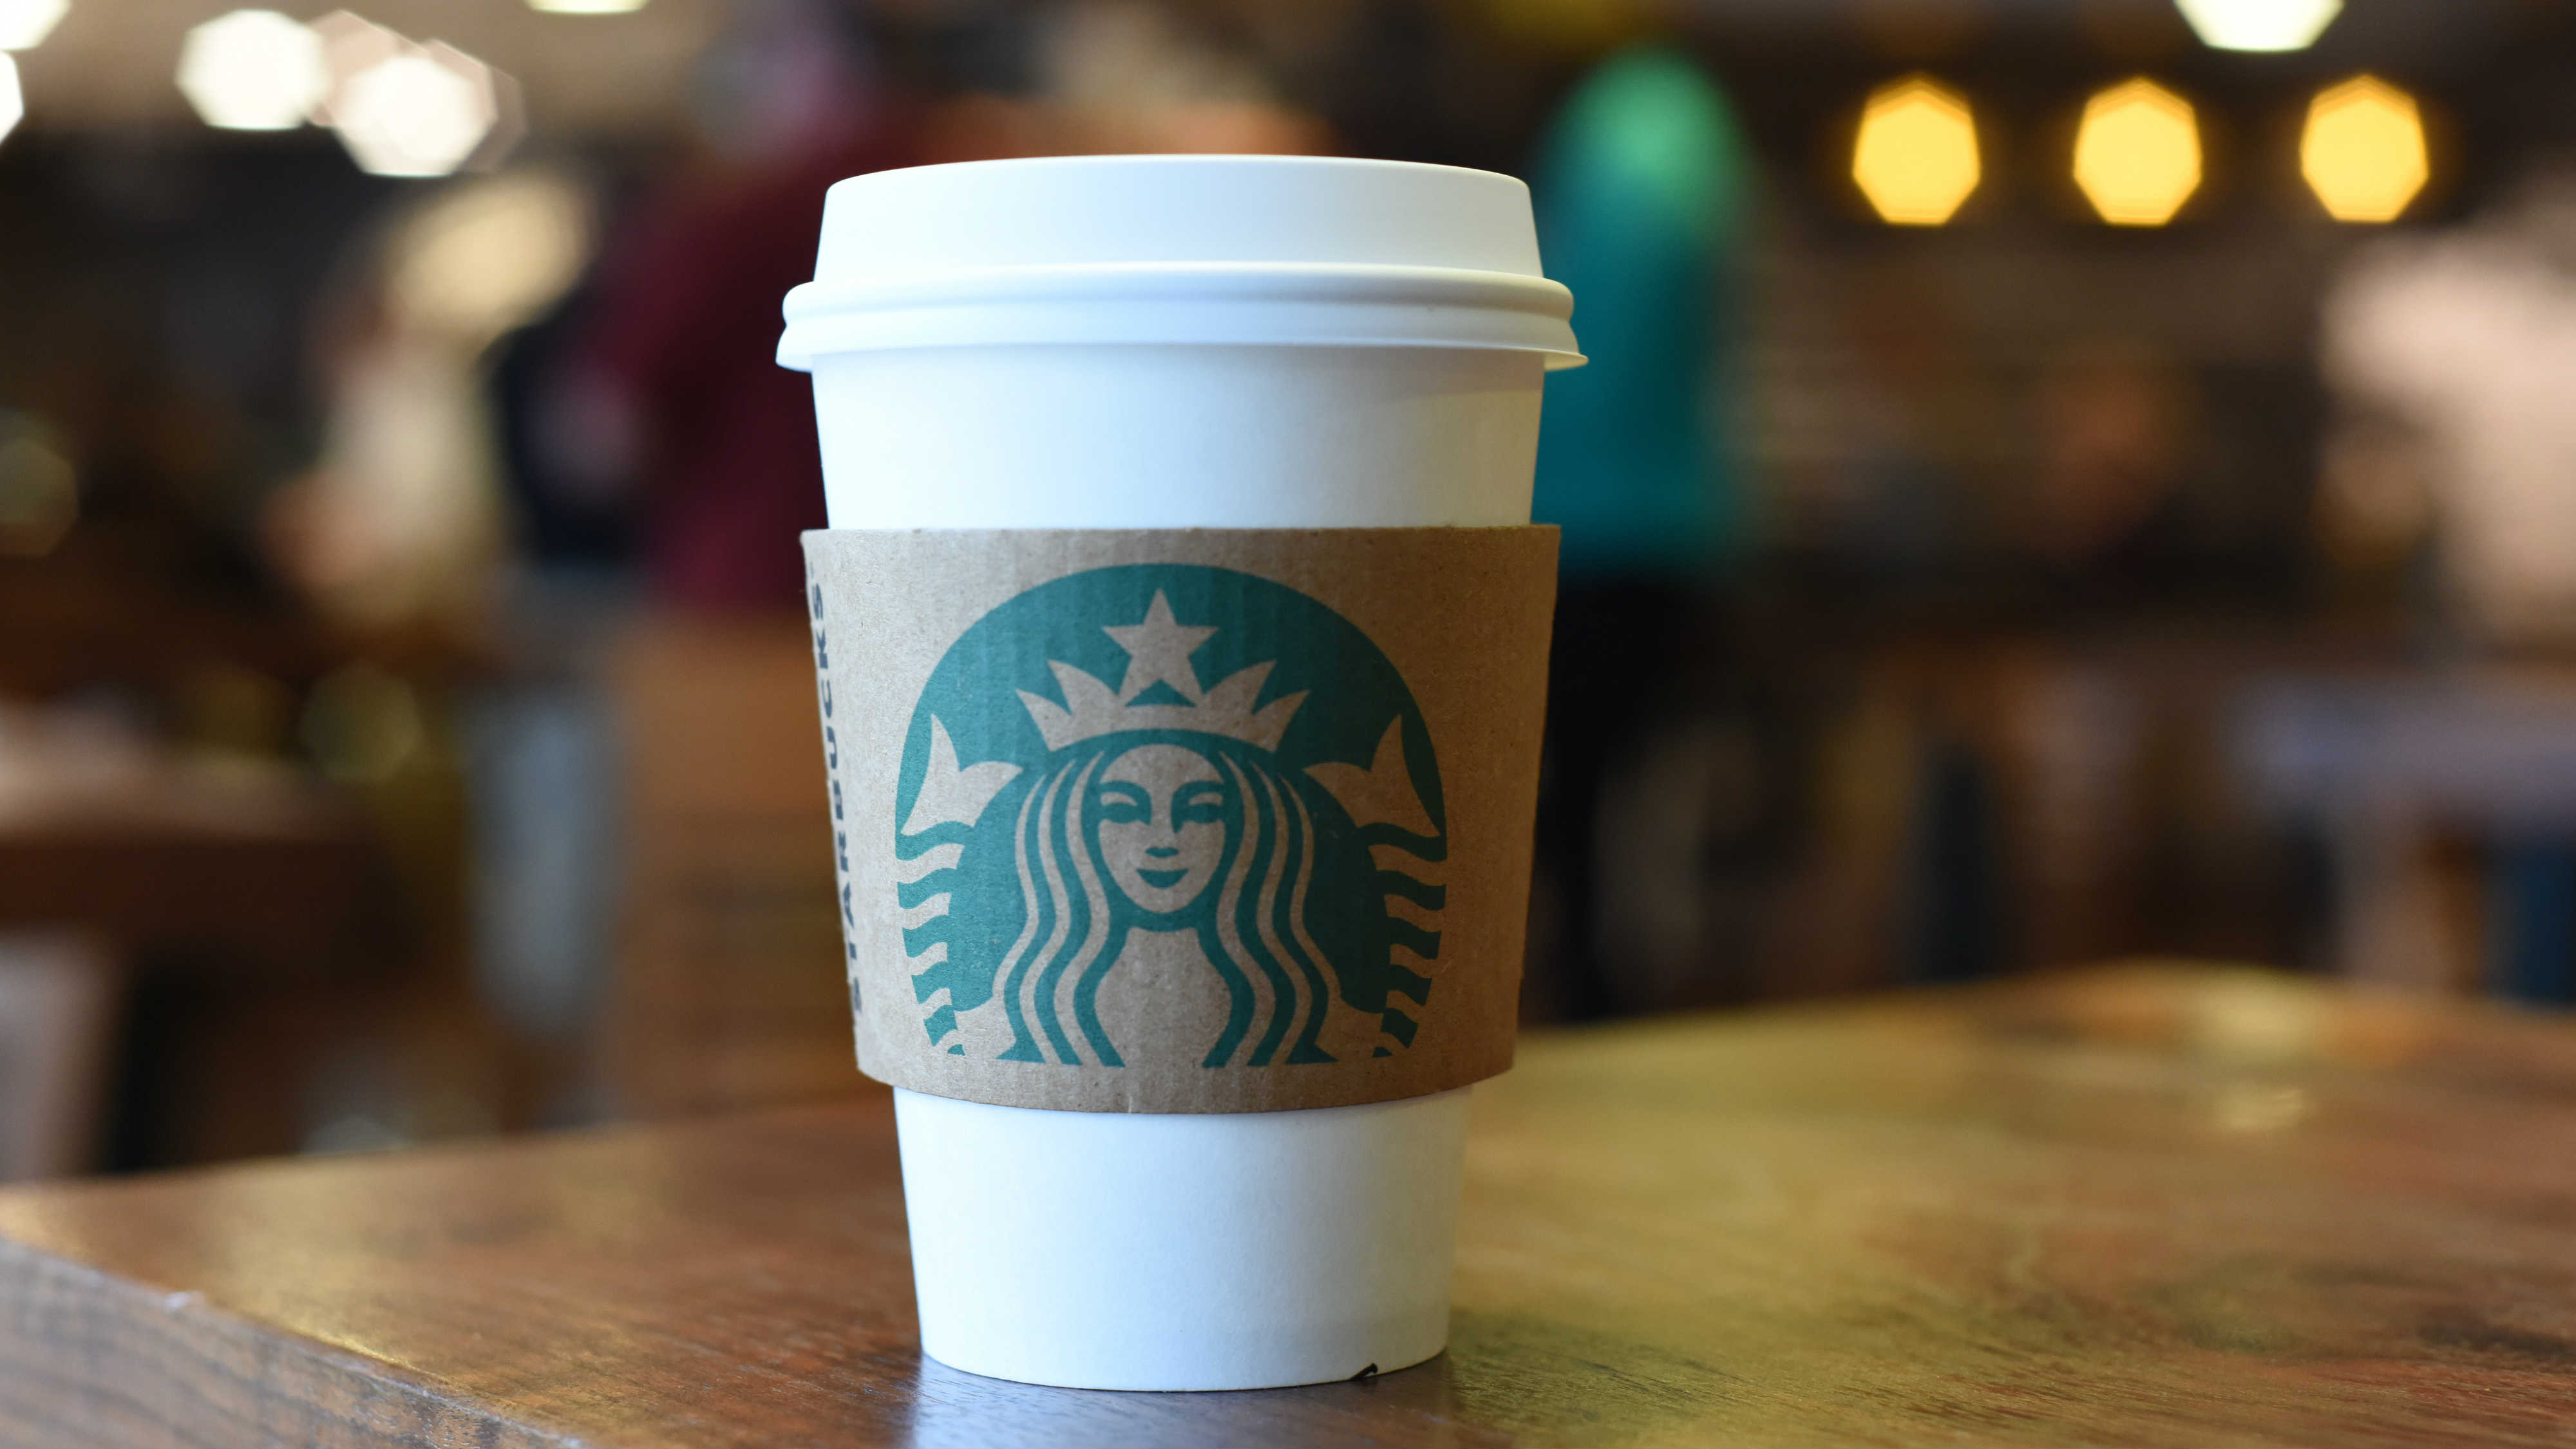 Warum die Aktie von Starbucks im Jahr 2018 um 19 % gestiegen ist